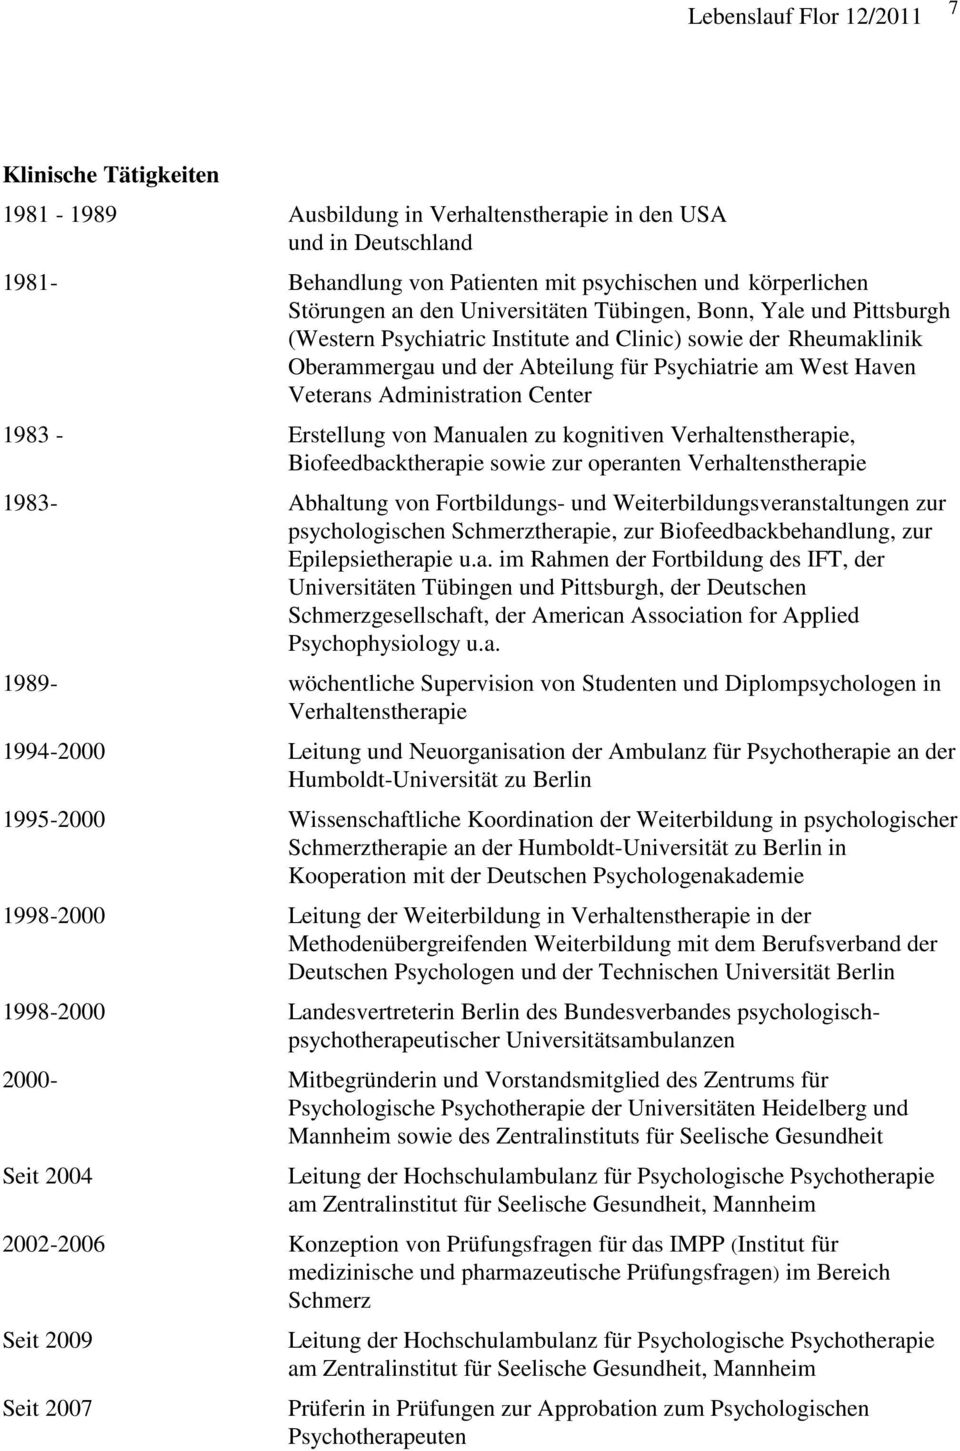 - Erstellung von Manualen zu kognitiven Verhaltenstherapie, Biofeedbacktherapie sowie zur operanten Verhaltenstherapie 1983- Abhaltung von Fortbildungs- und Weiterbildungsveranstaltungen zur